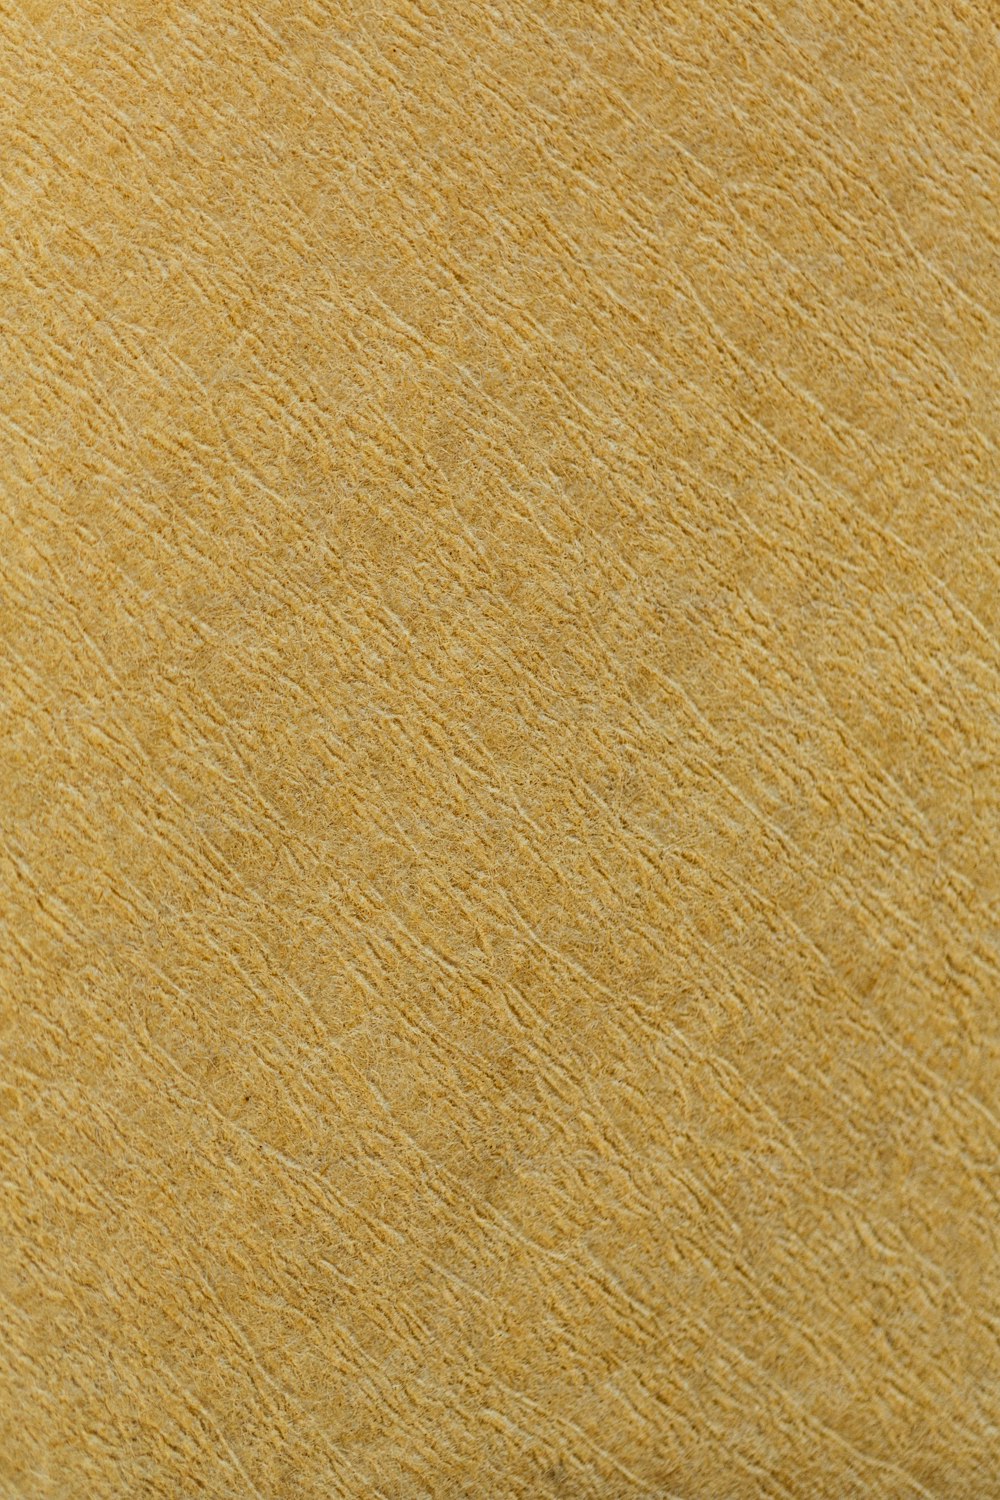 Una vista de cerca de una superficie con textura amarilla